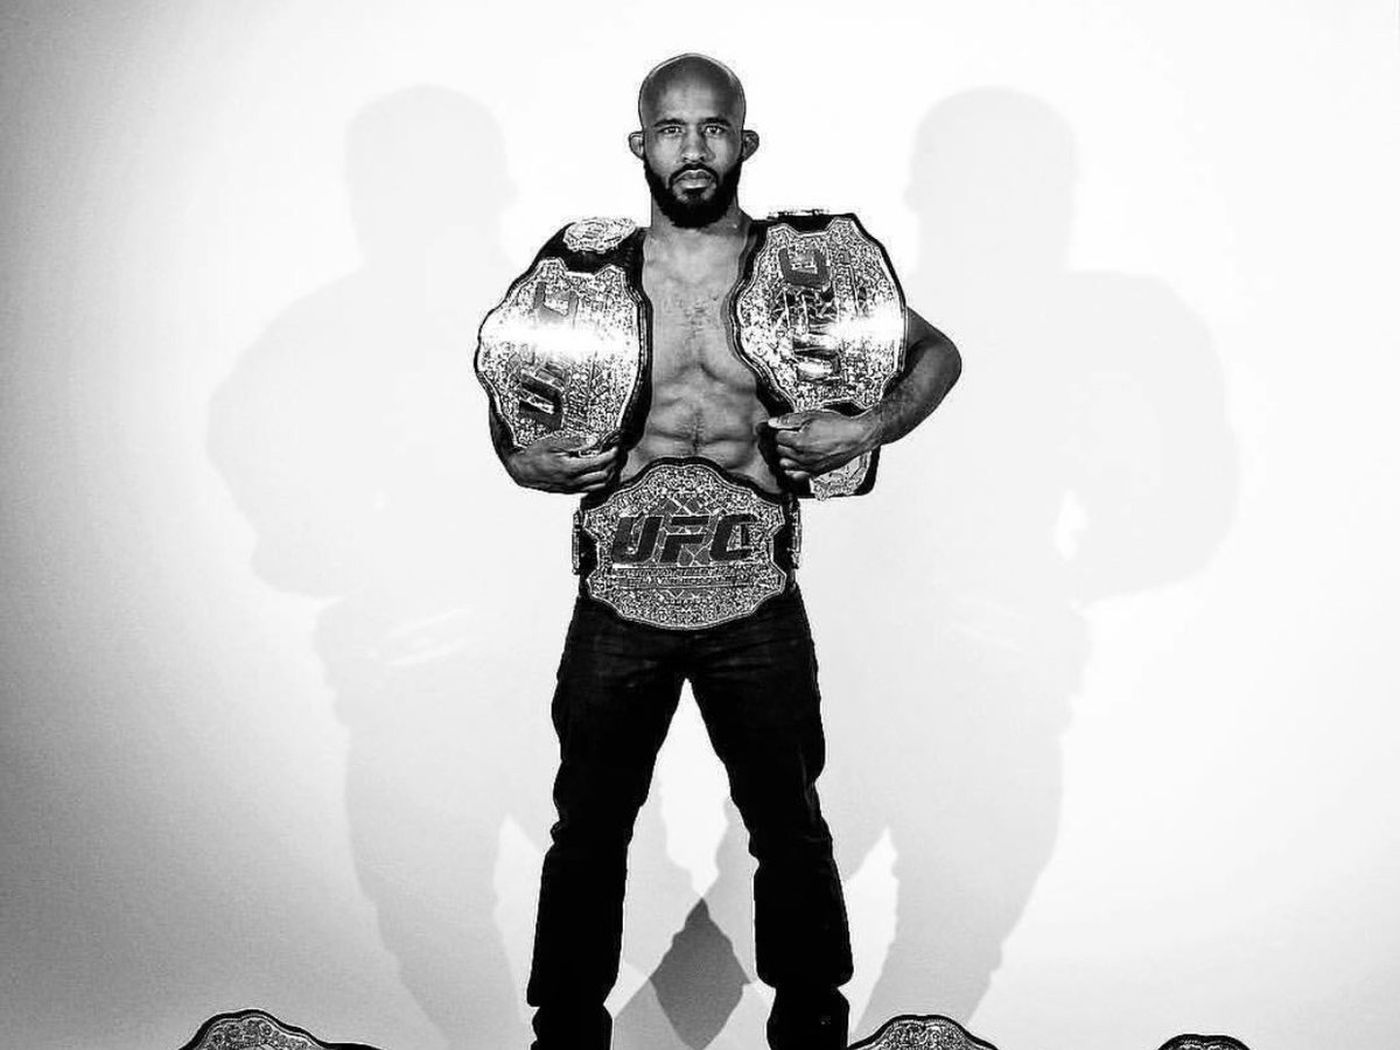 Pic: UFC (finally) sends Demetrious Johnson ALL THE BELTS!